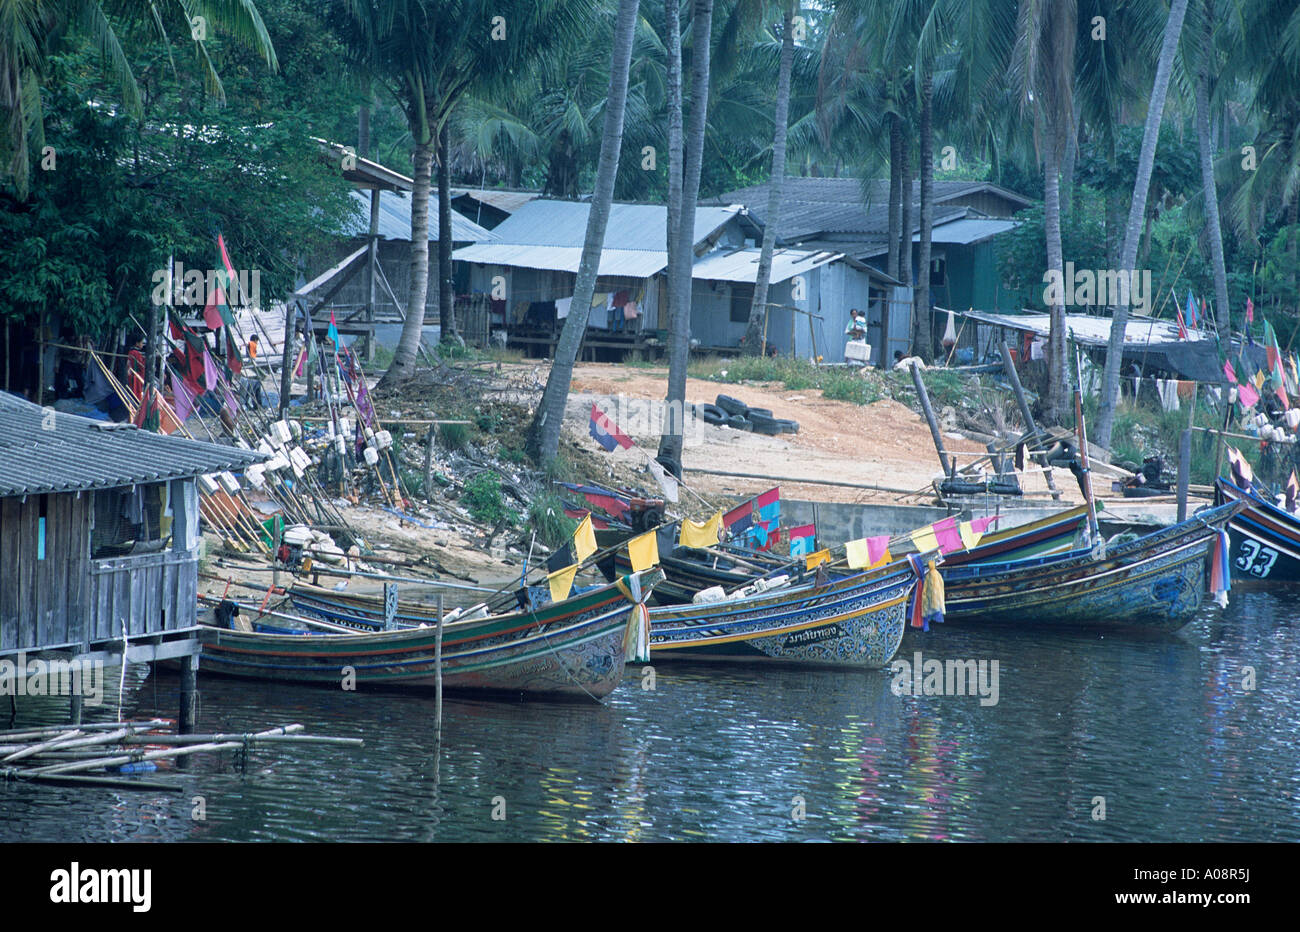 Boats moored along the banks at Saiburi Stock Photo